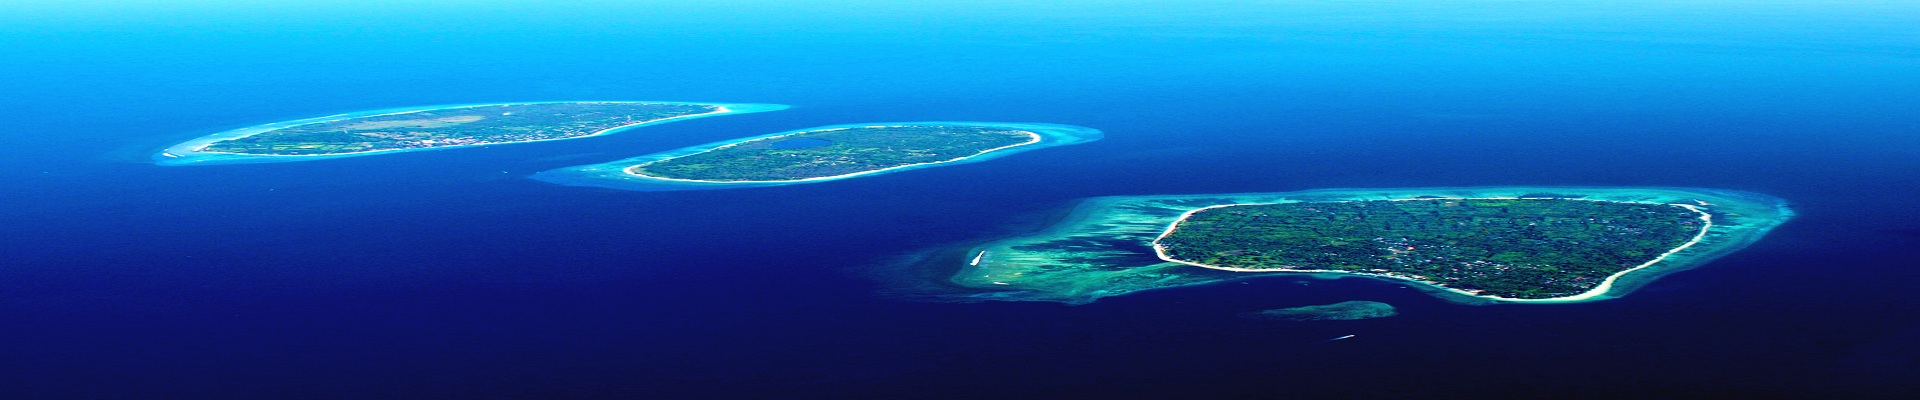 Ilhas Gili, Gili Islands